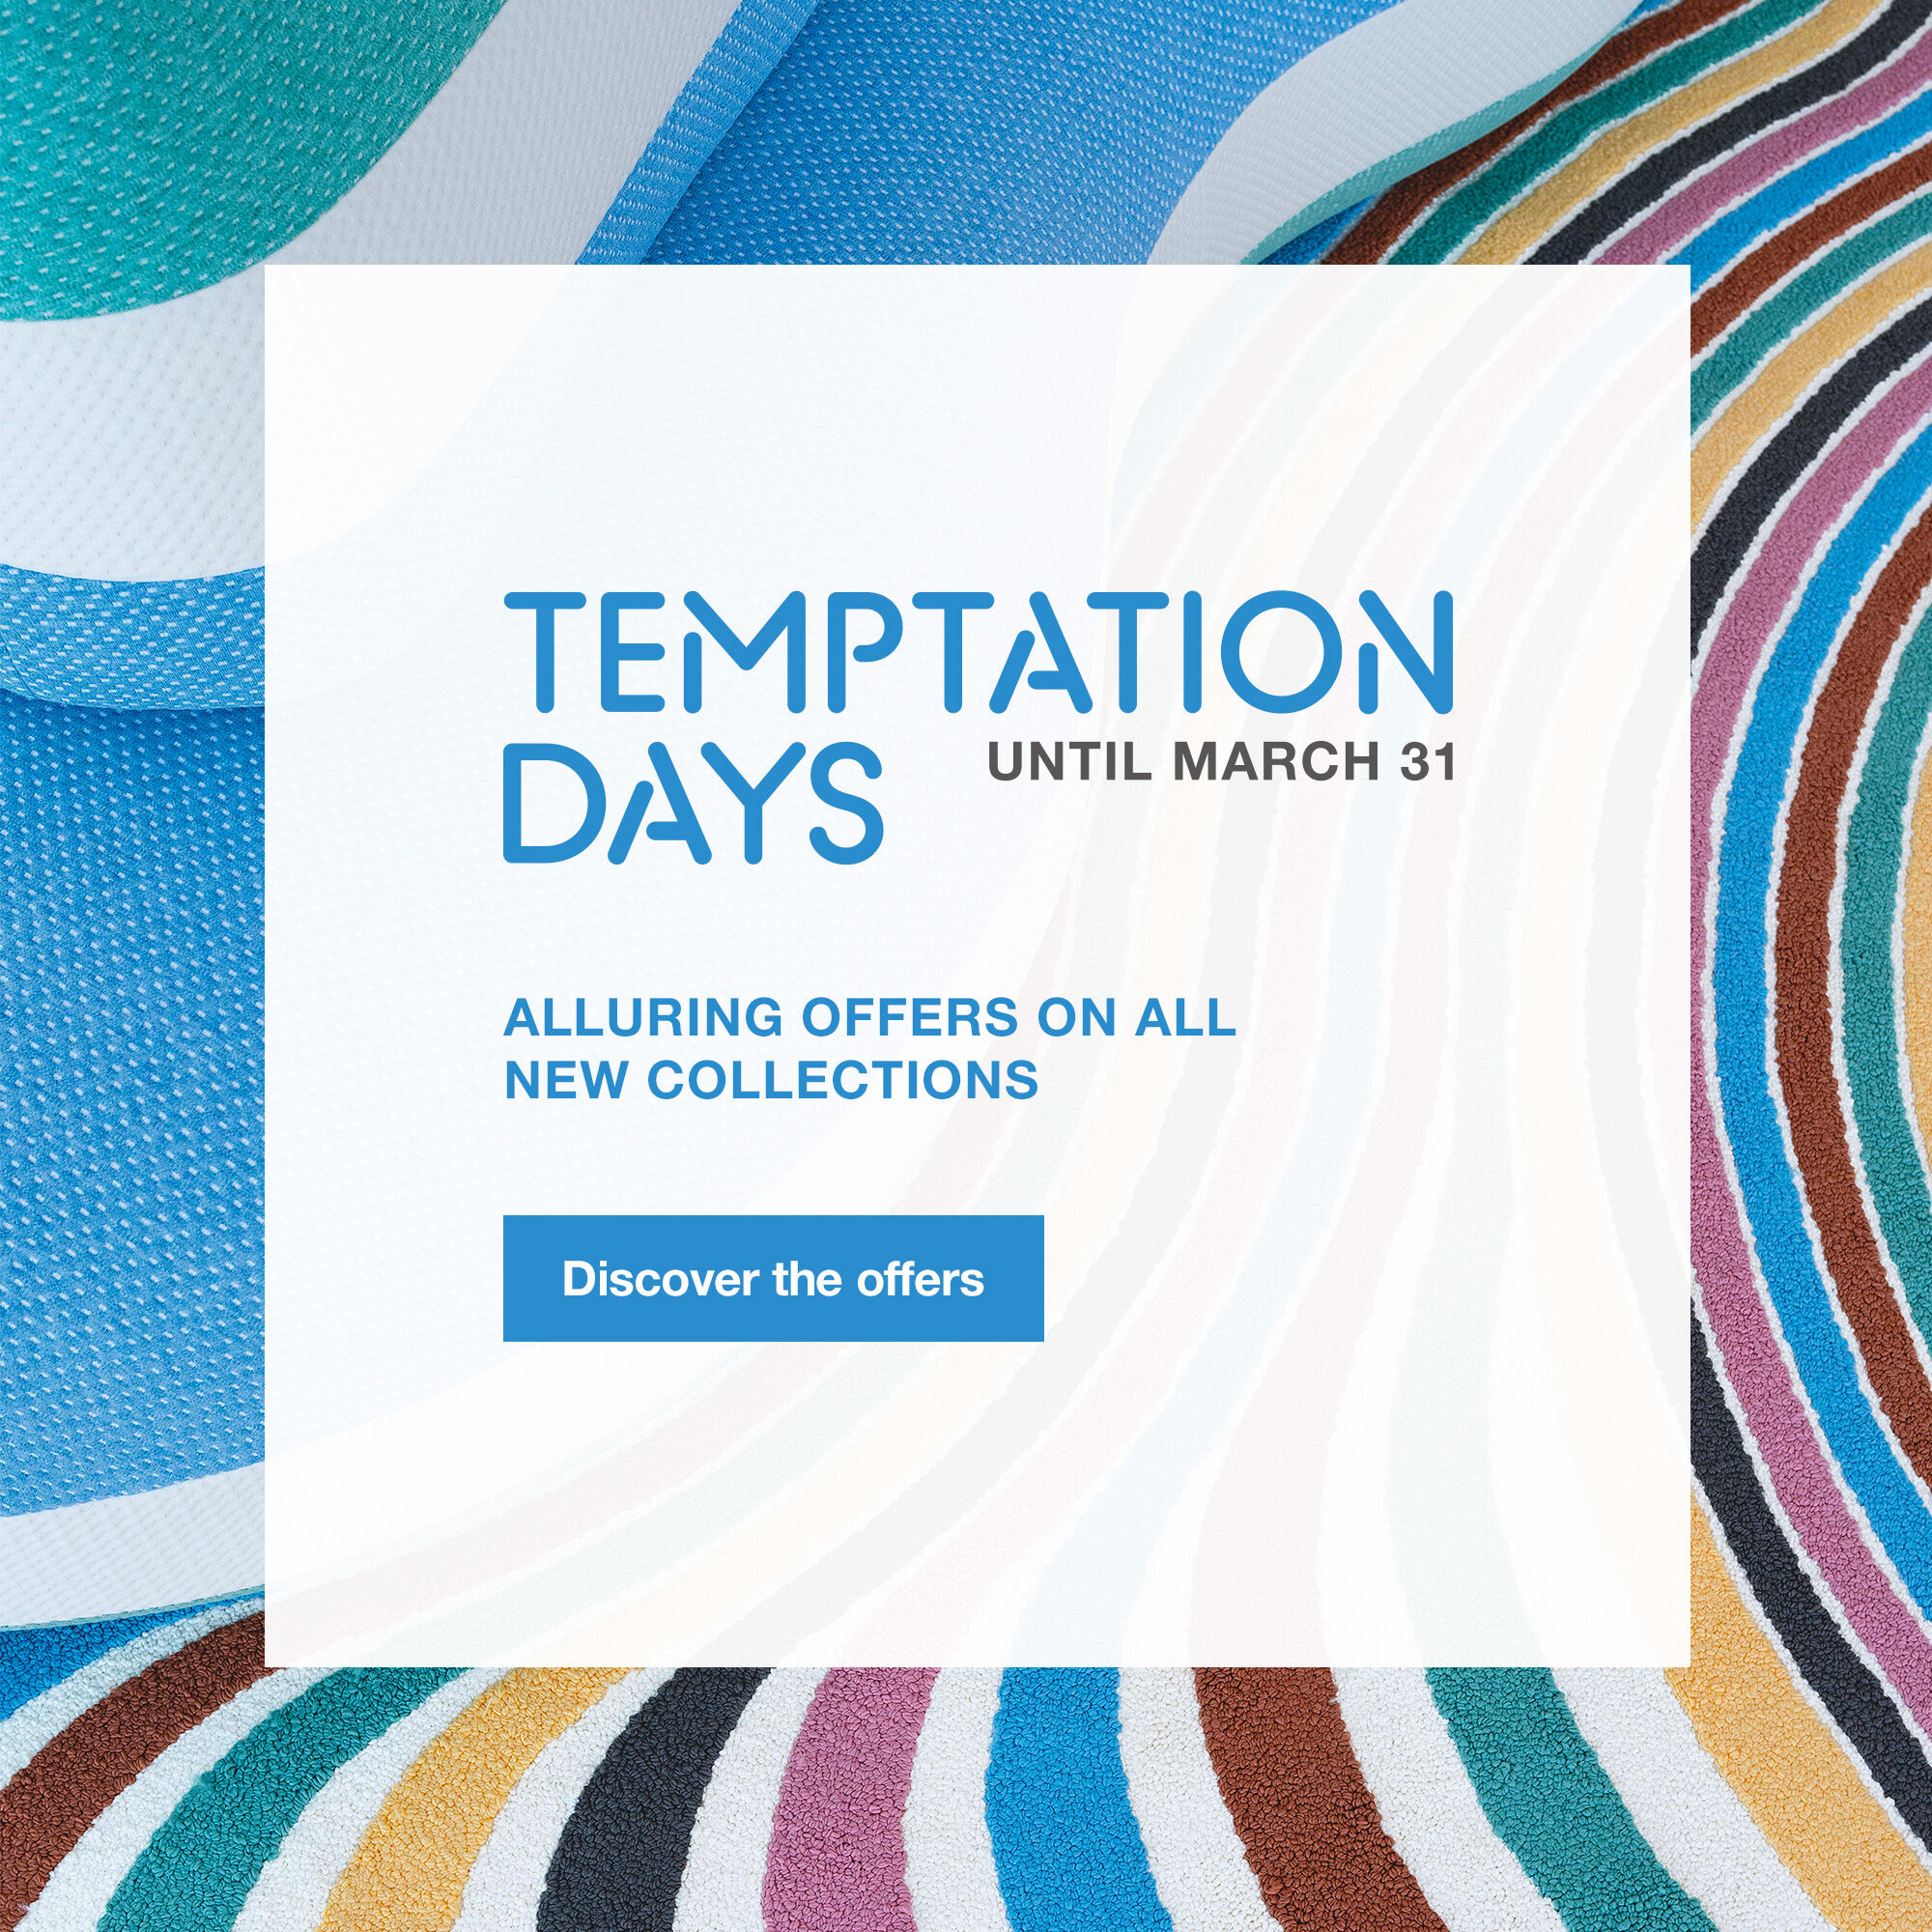 Temptation Days, until March 31st